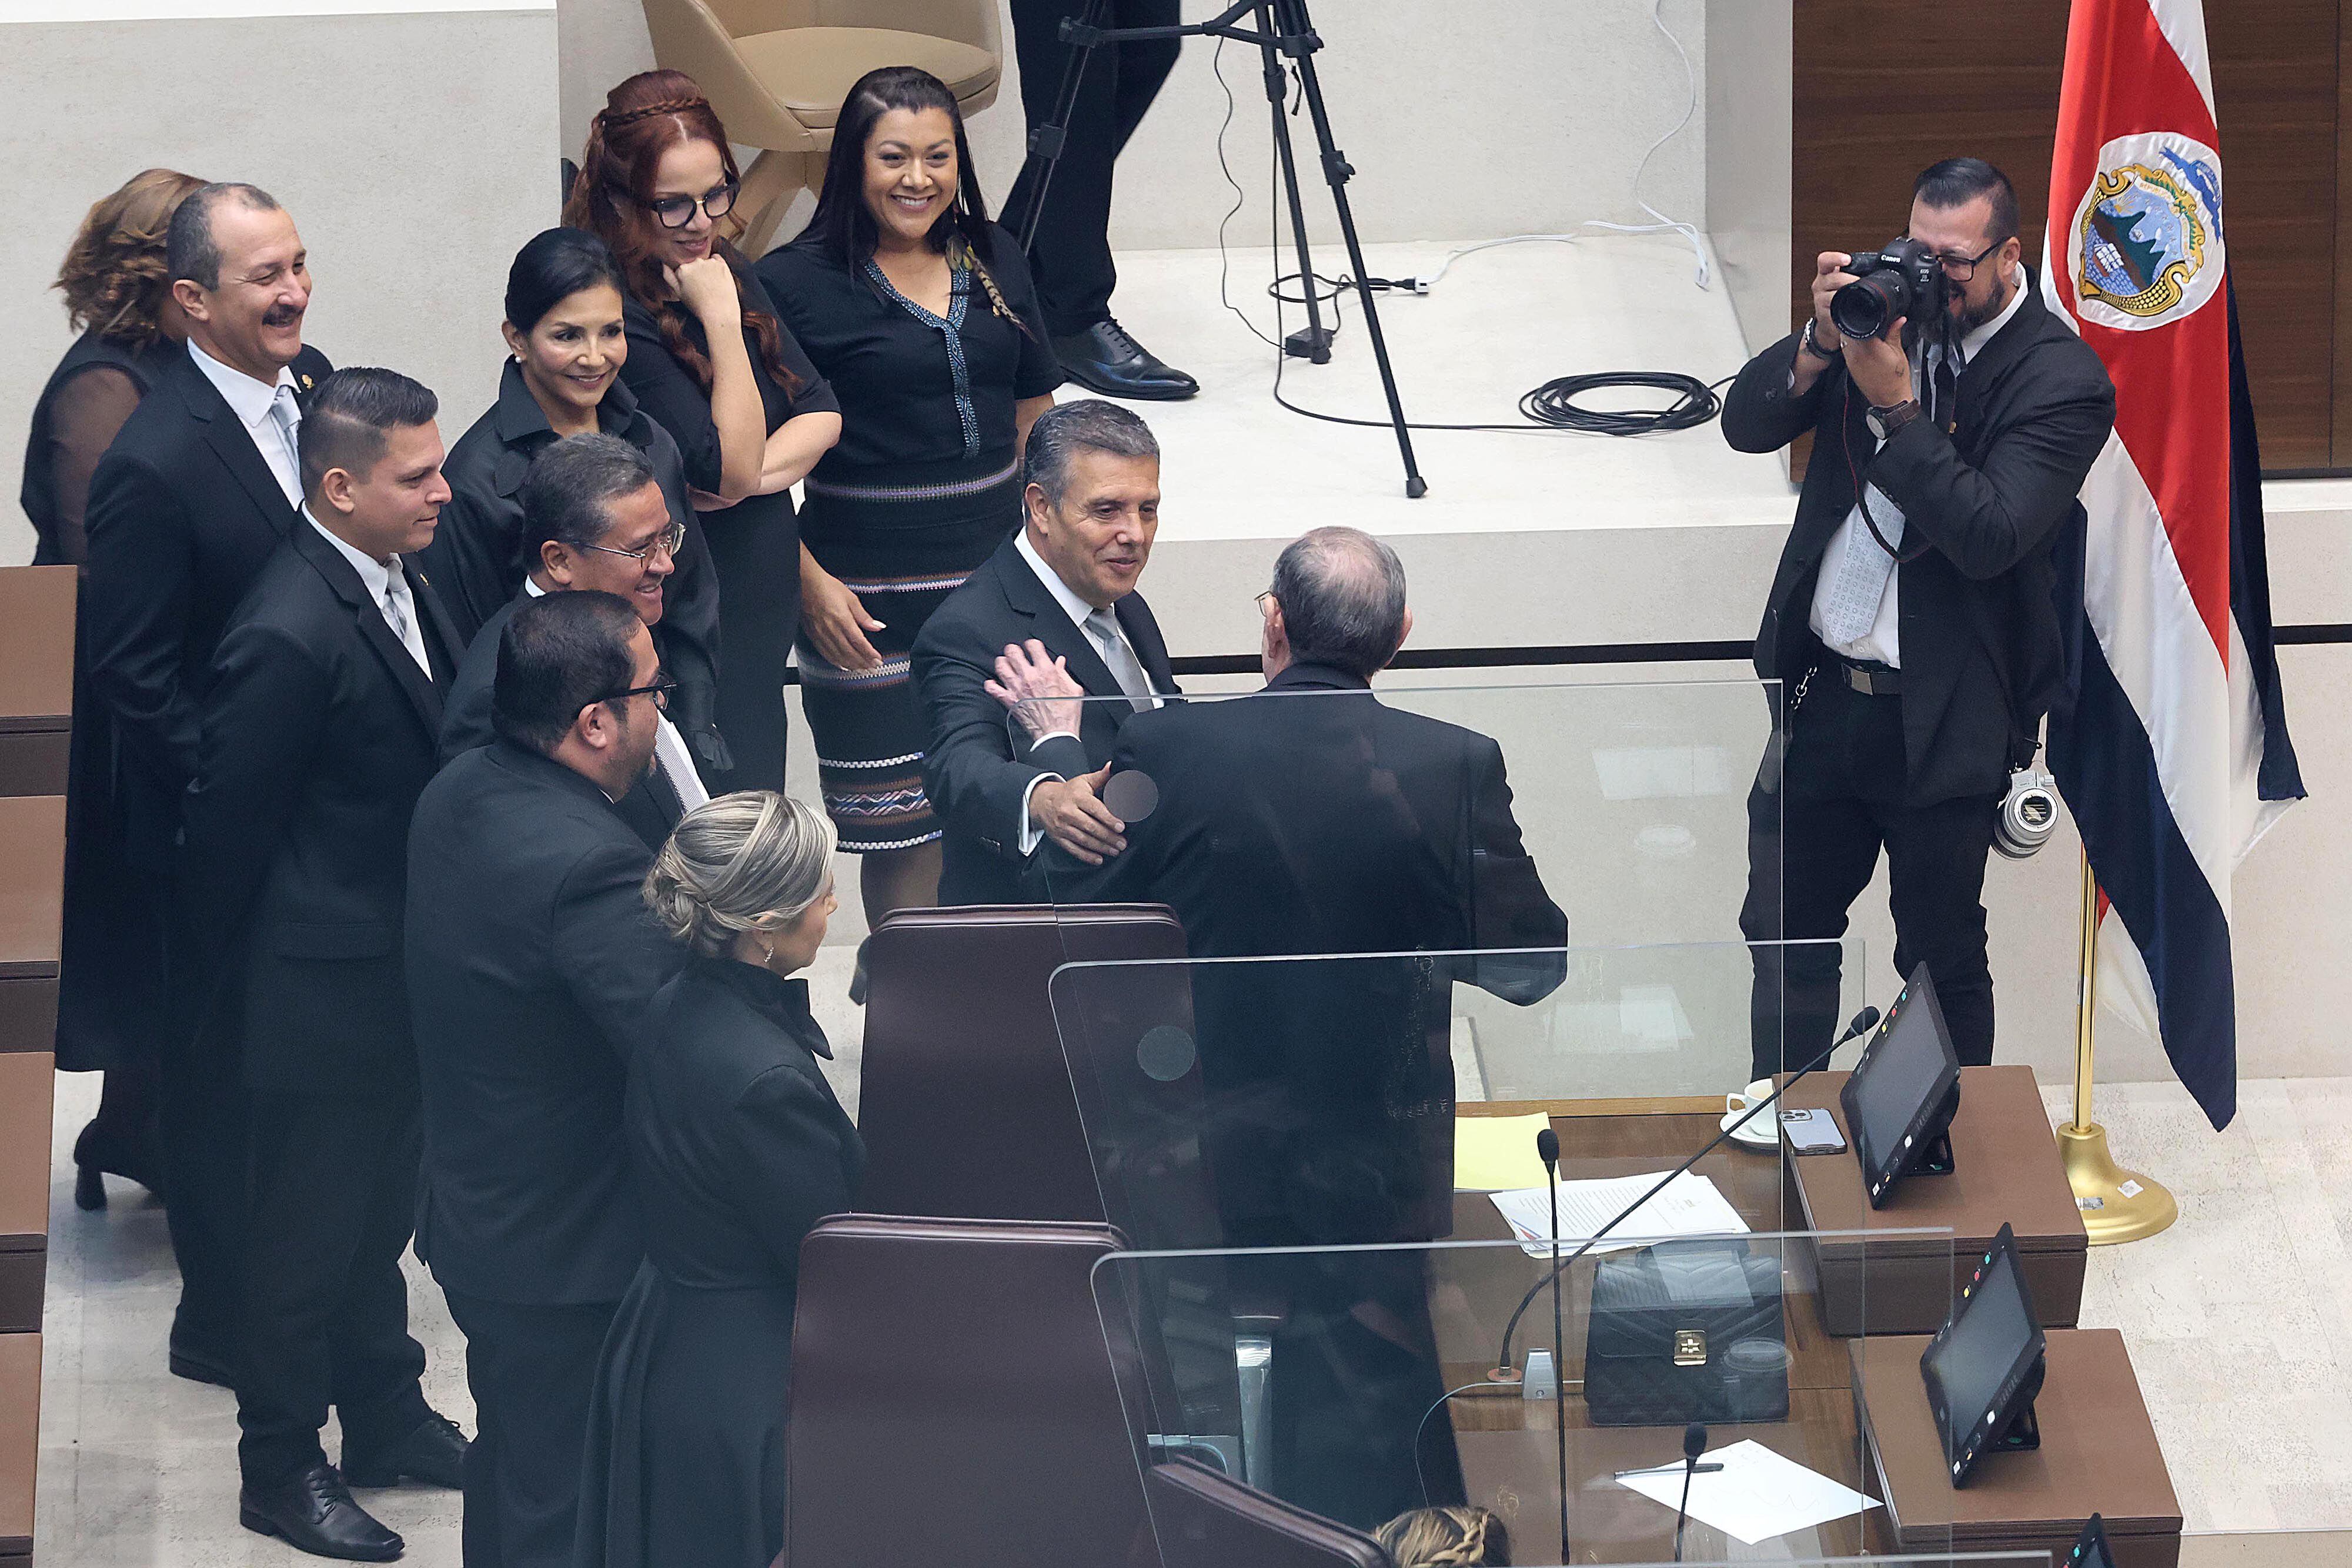 La fracción del PLN demostró disciplina en el proceso de negociación para la reelección de Rodrigo Arias en la presidencia legislativa. Óscar Izquierdo saluda al jerarca del Congreso (de espaldas). Foto: 